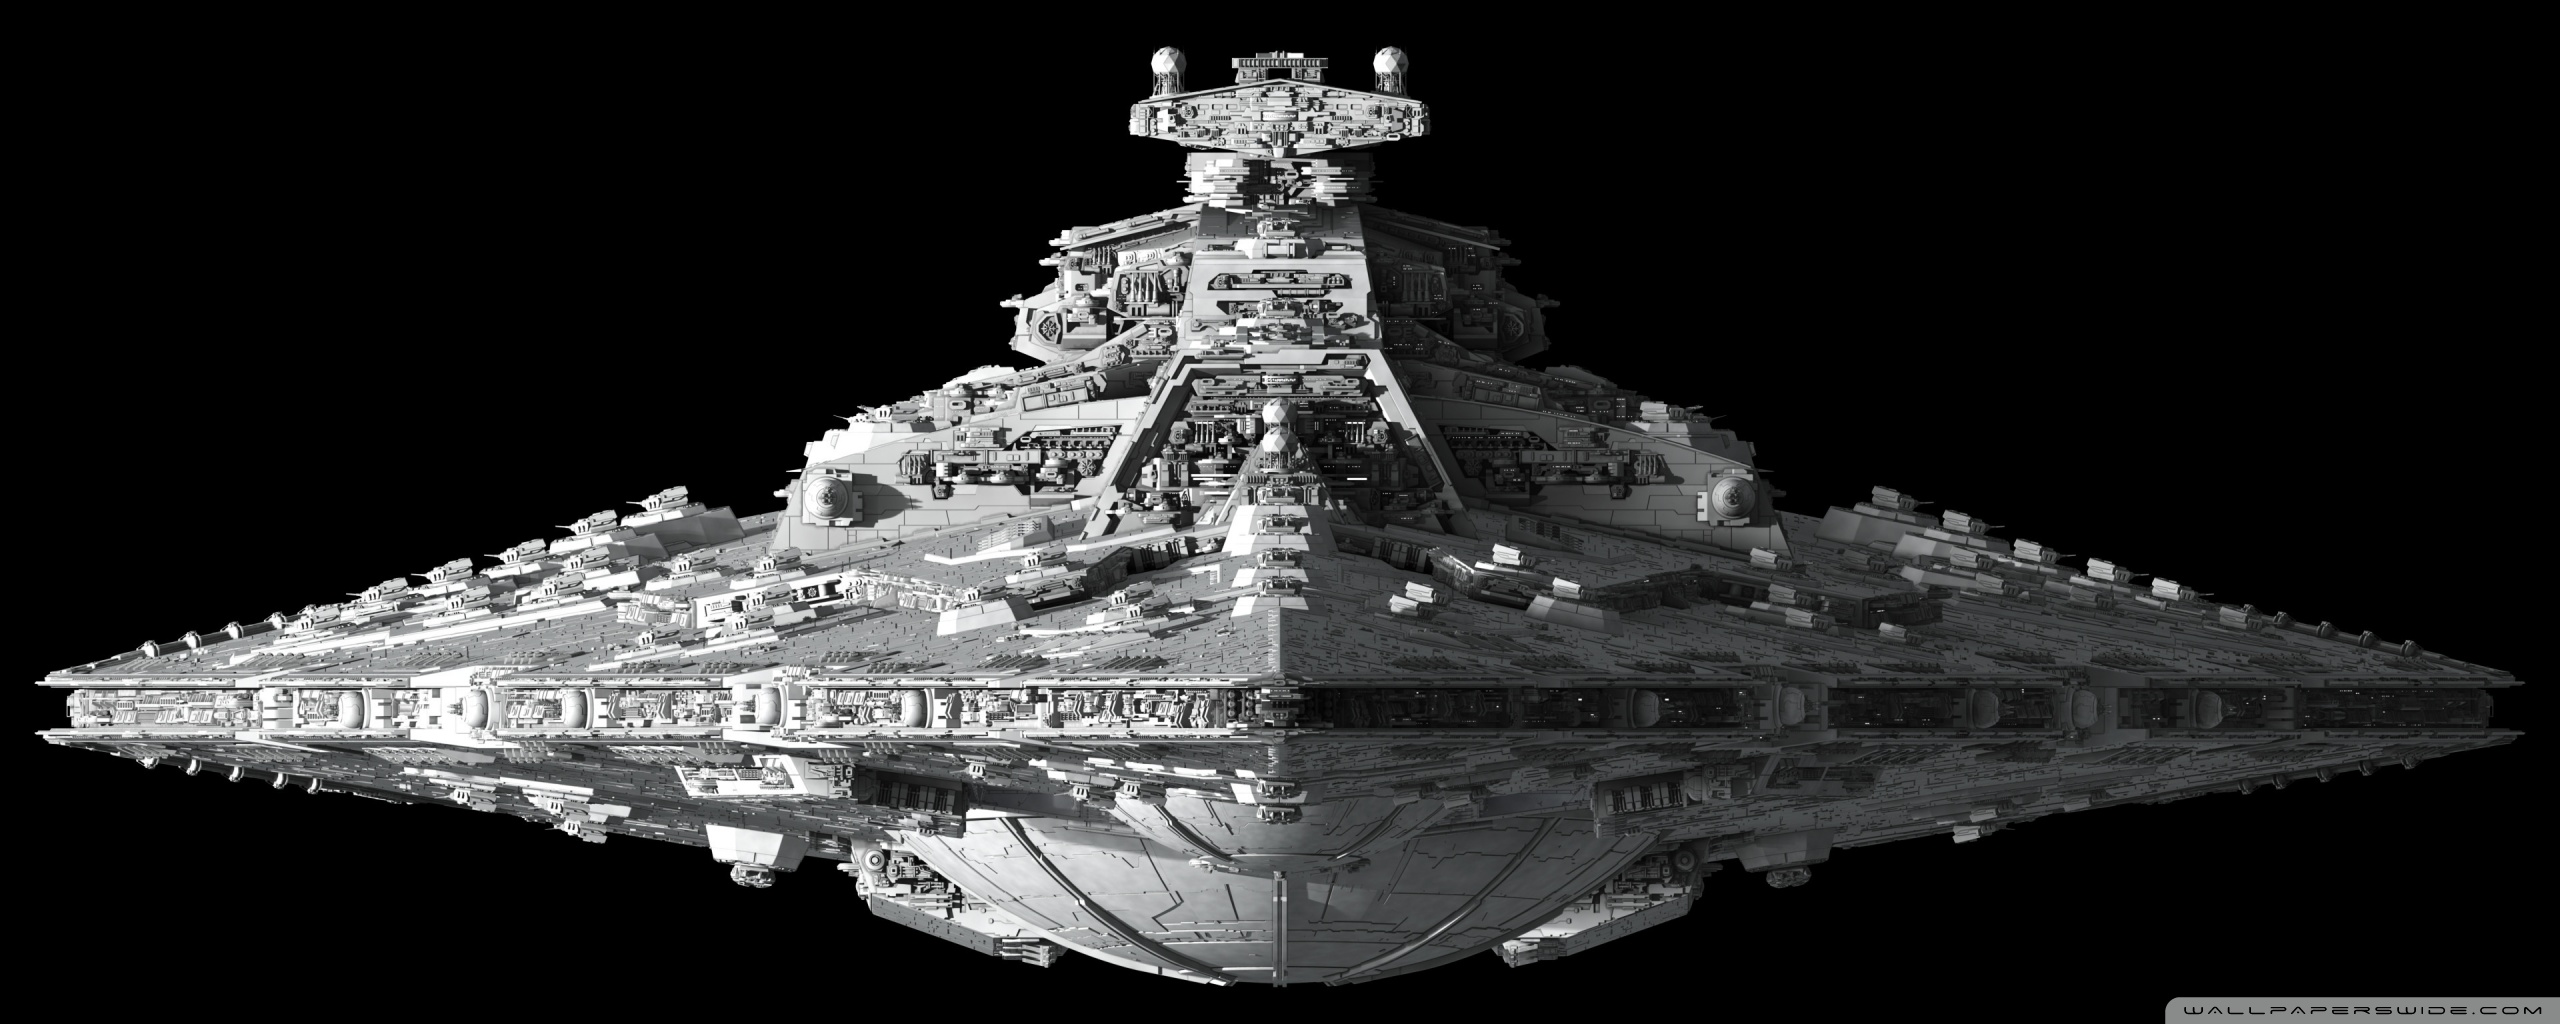 guerre stellari carta da parati a doppio schermo,corazzata,veicolo,nave,battlecruiser,bianco e nero